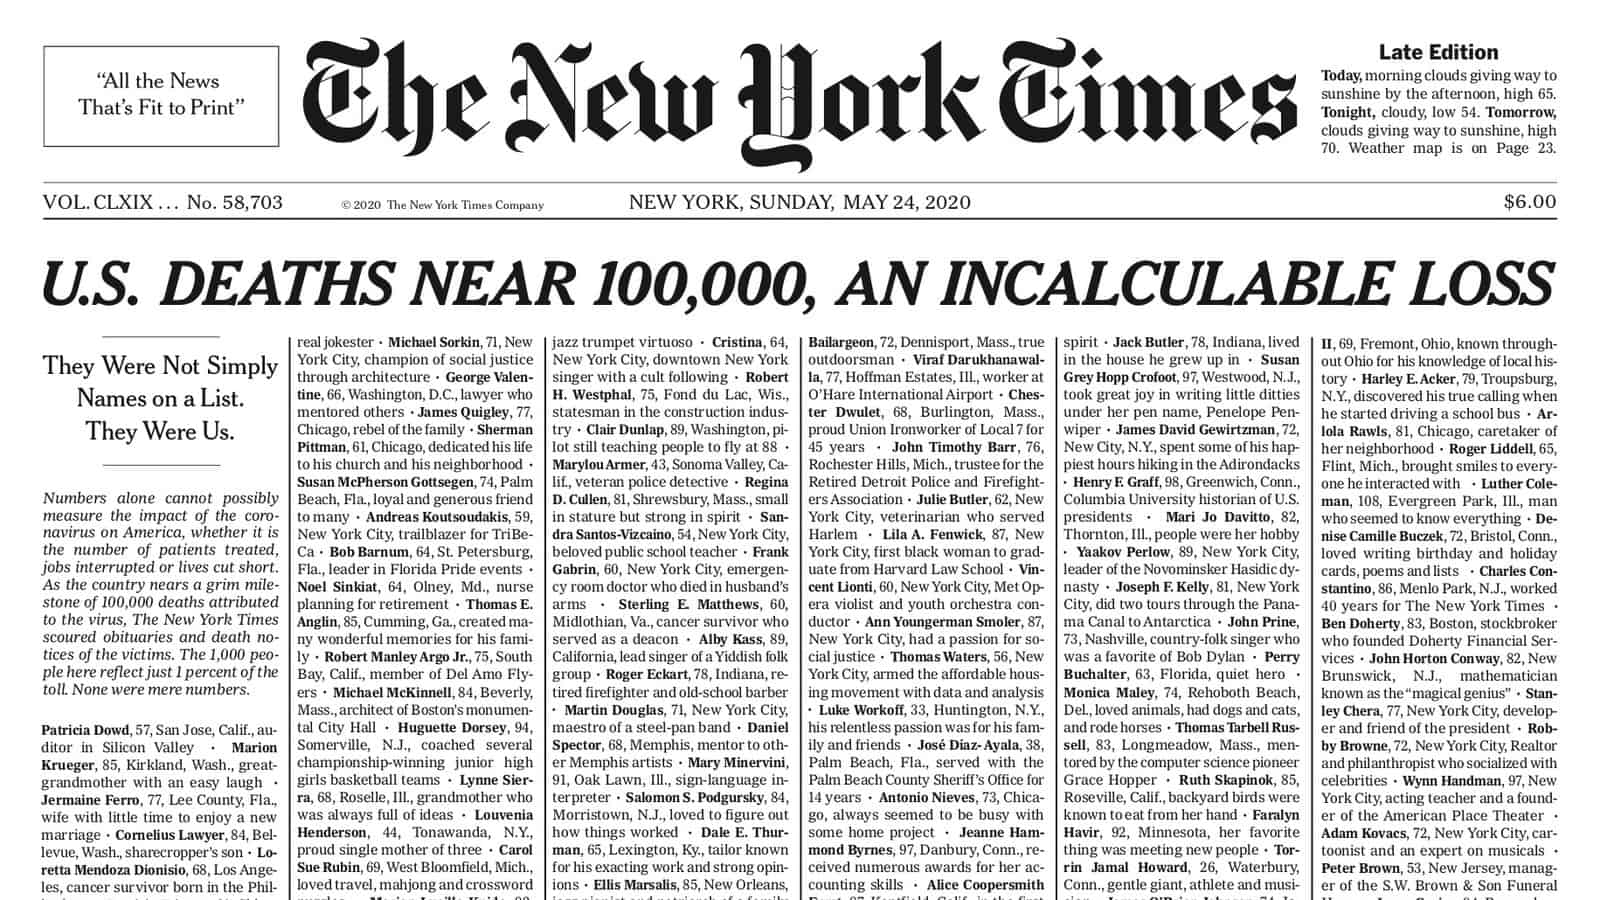 New York Times dedica emotiva portada a las casi 100,000 víctimas de Covid-19 en EE.UU.